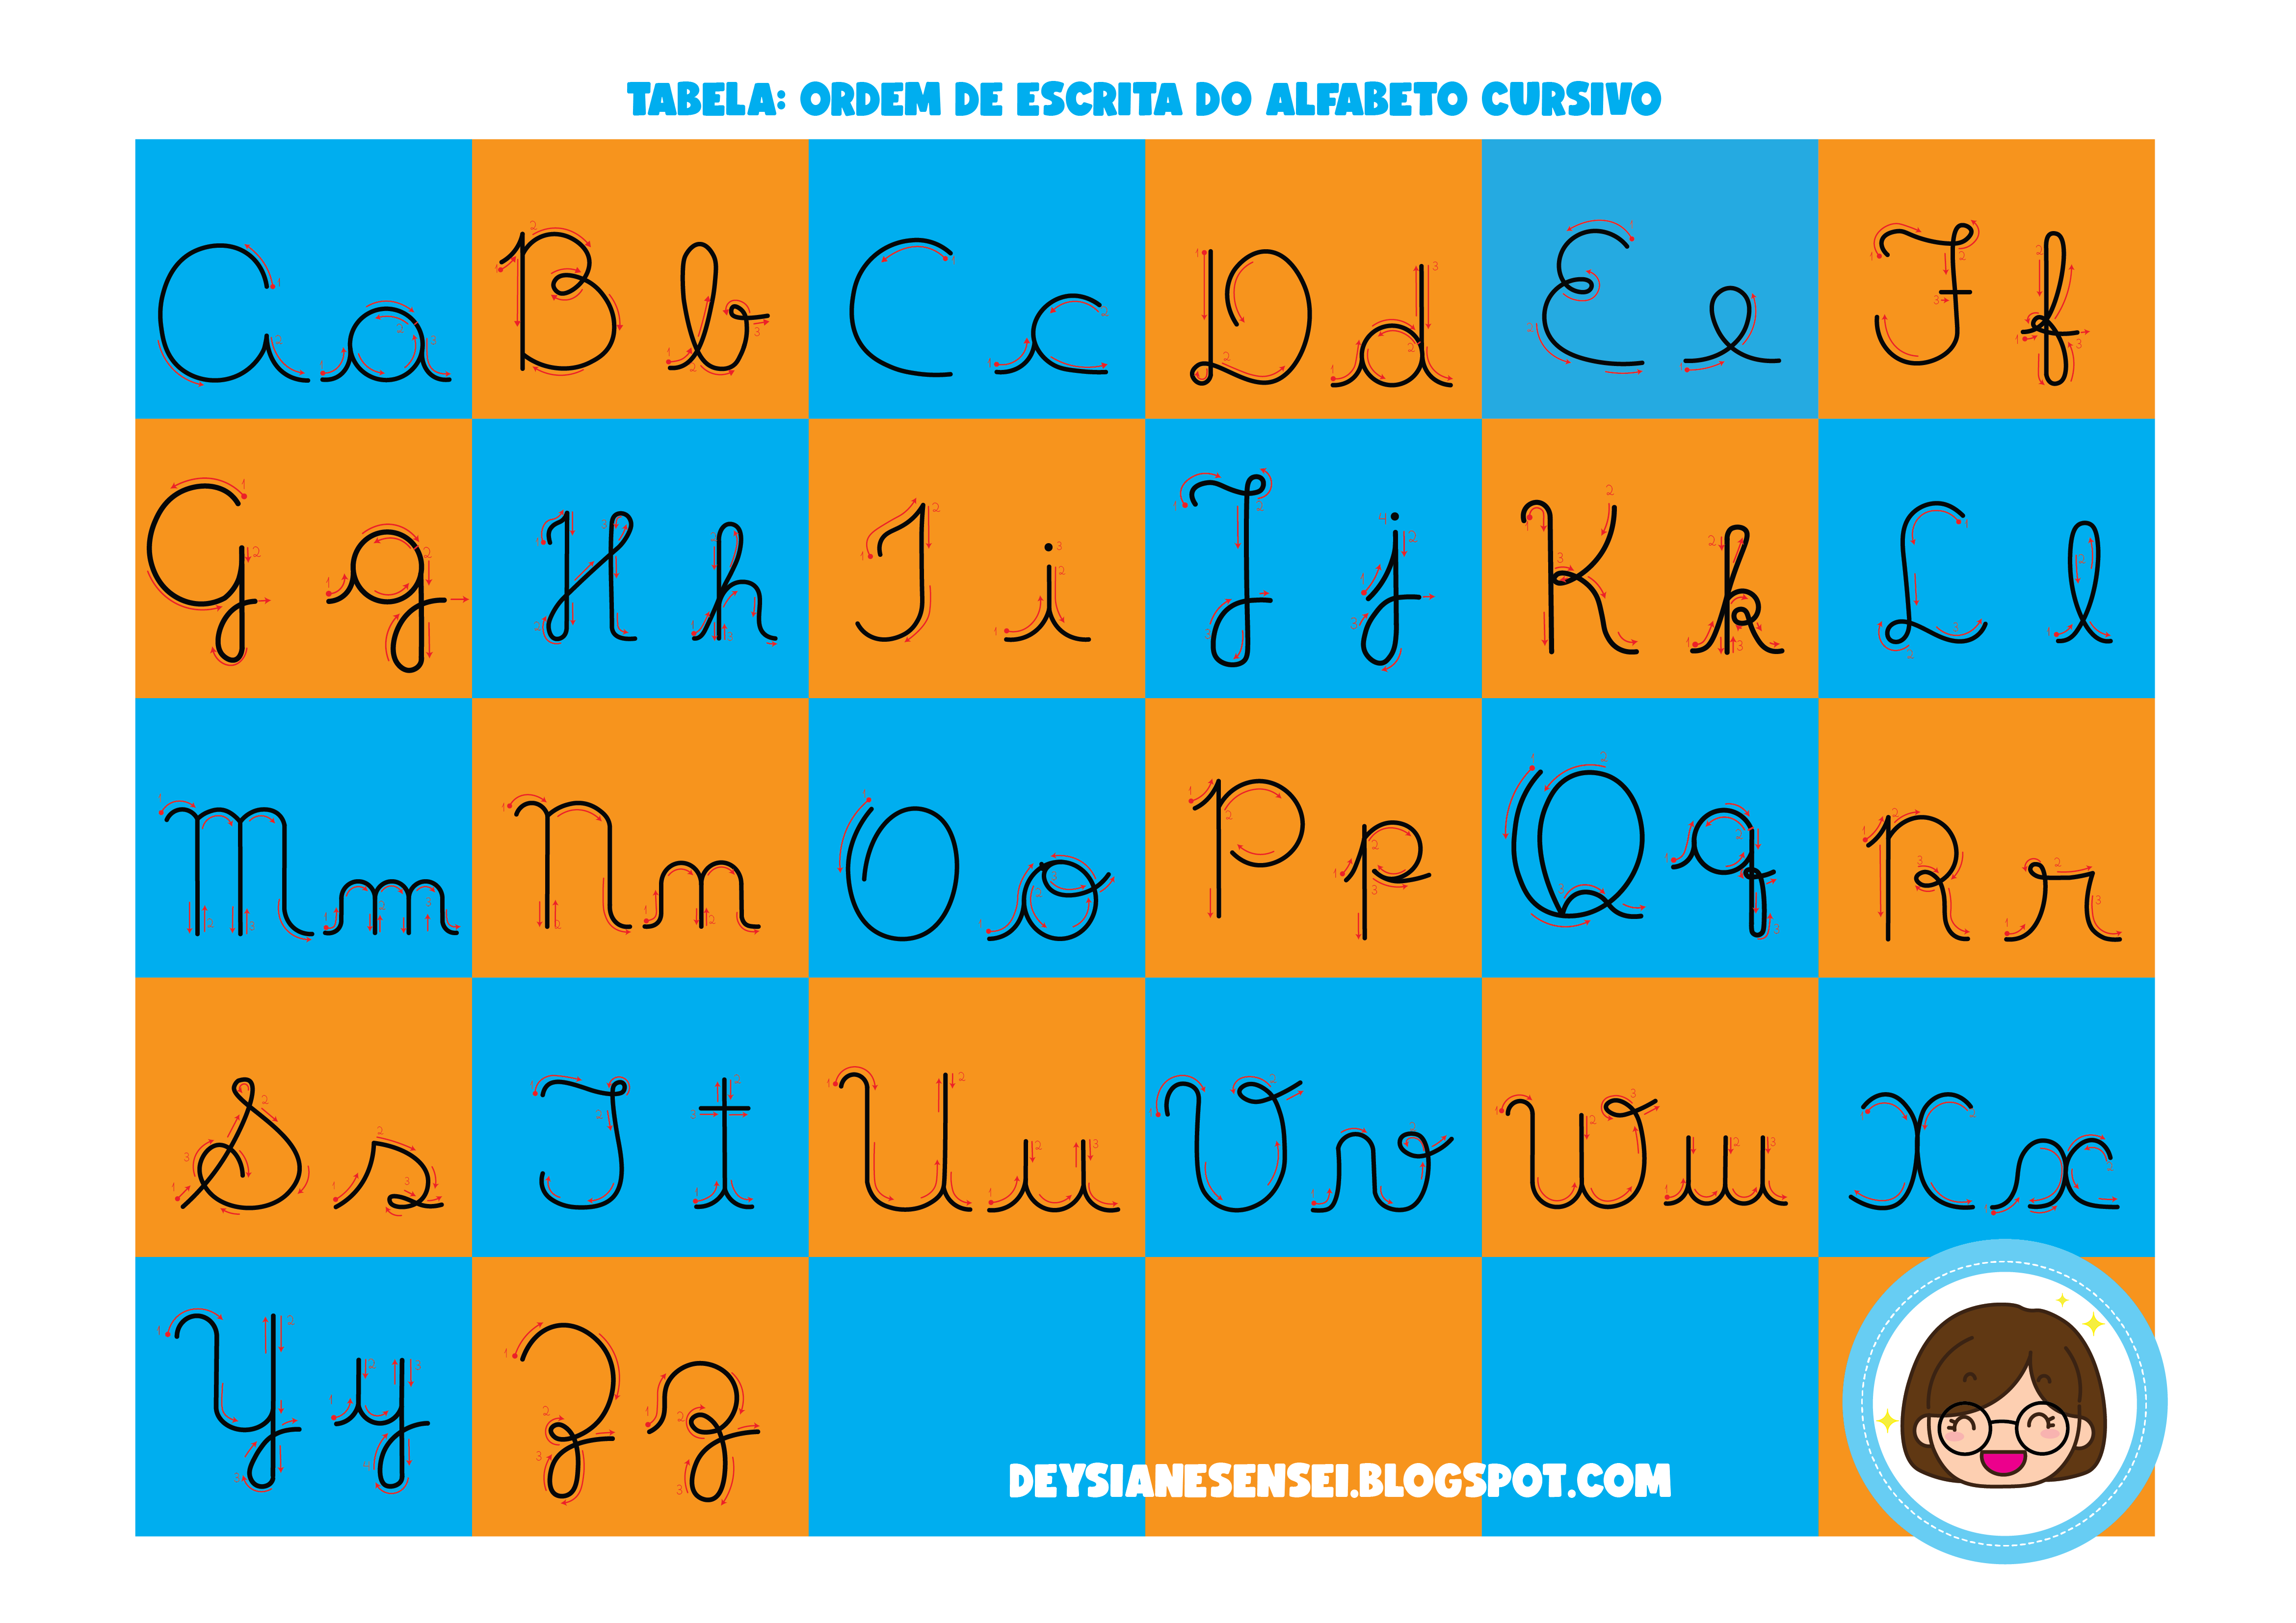 DeysianeSensei: Atividades para baixar: Alfabeto em Letra Bastão com Setas  para Auxiliar a Escrita.